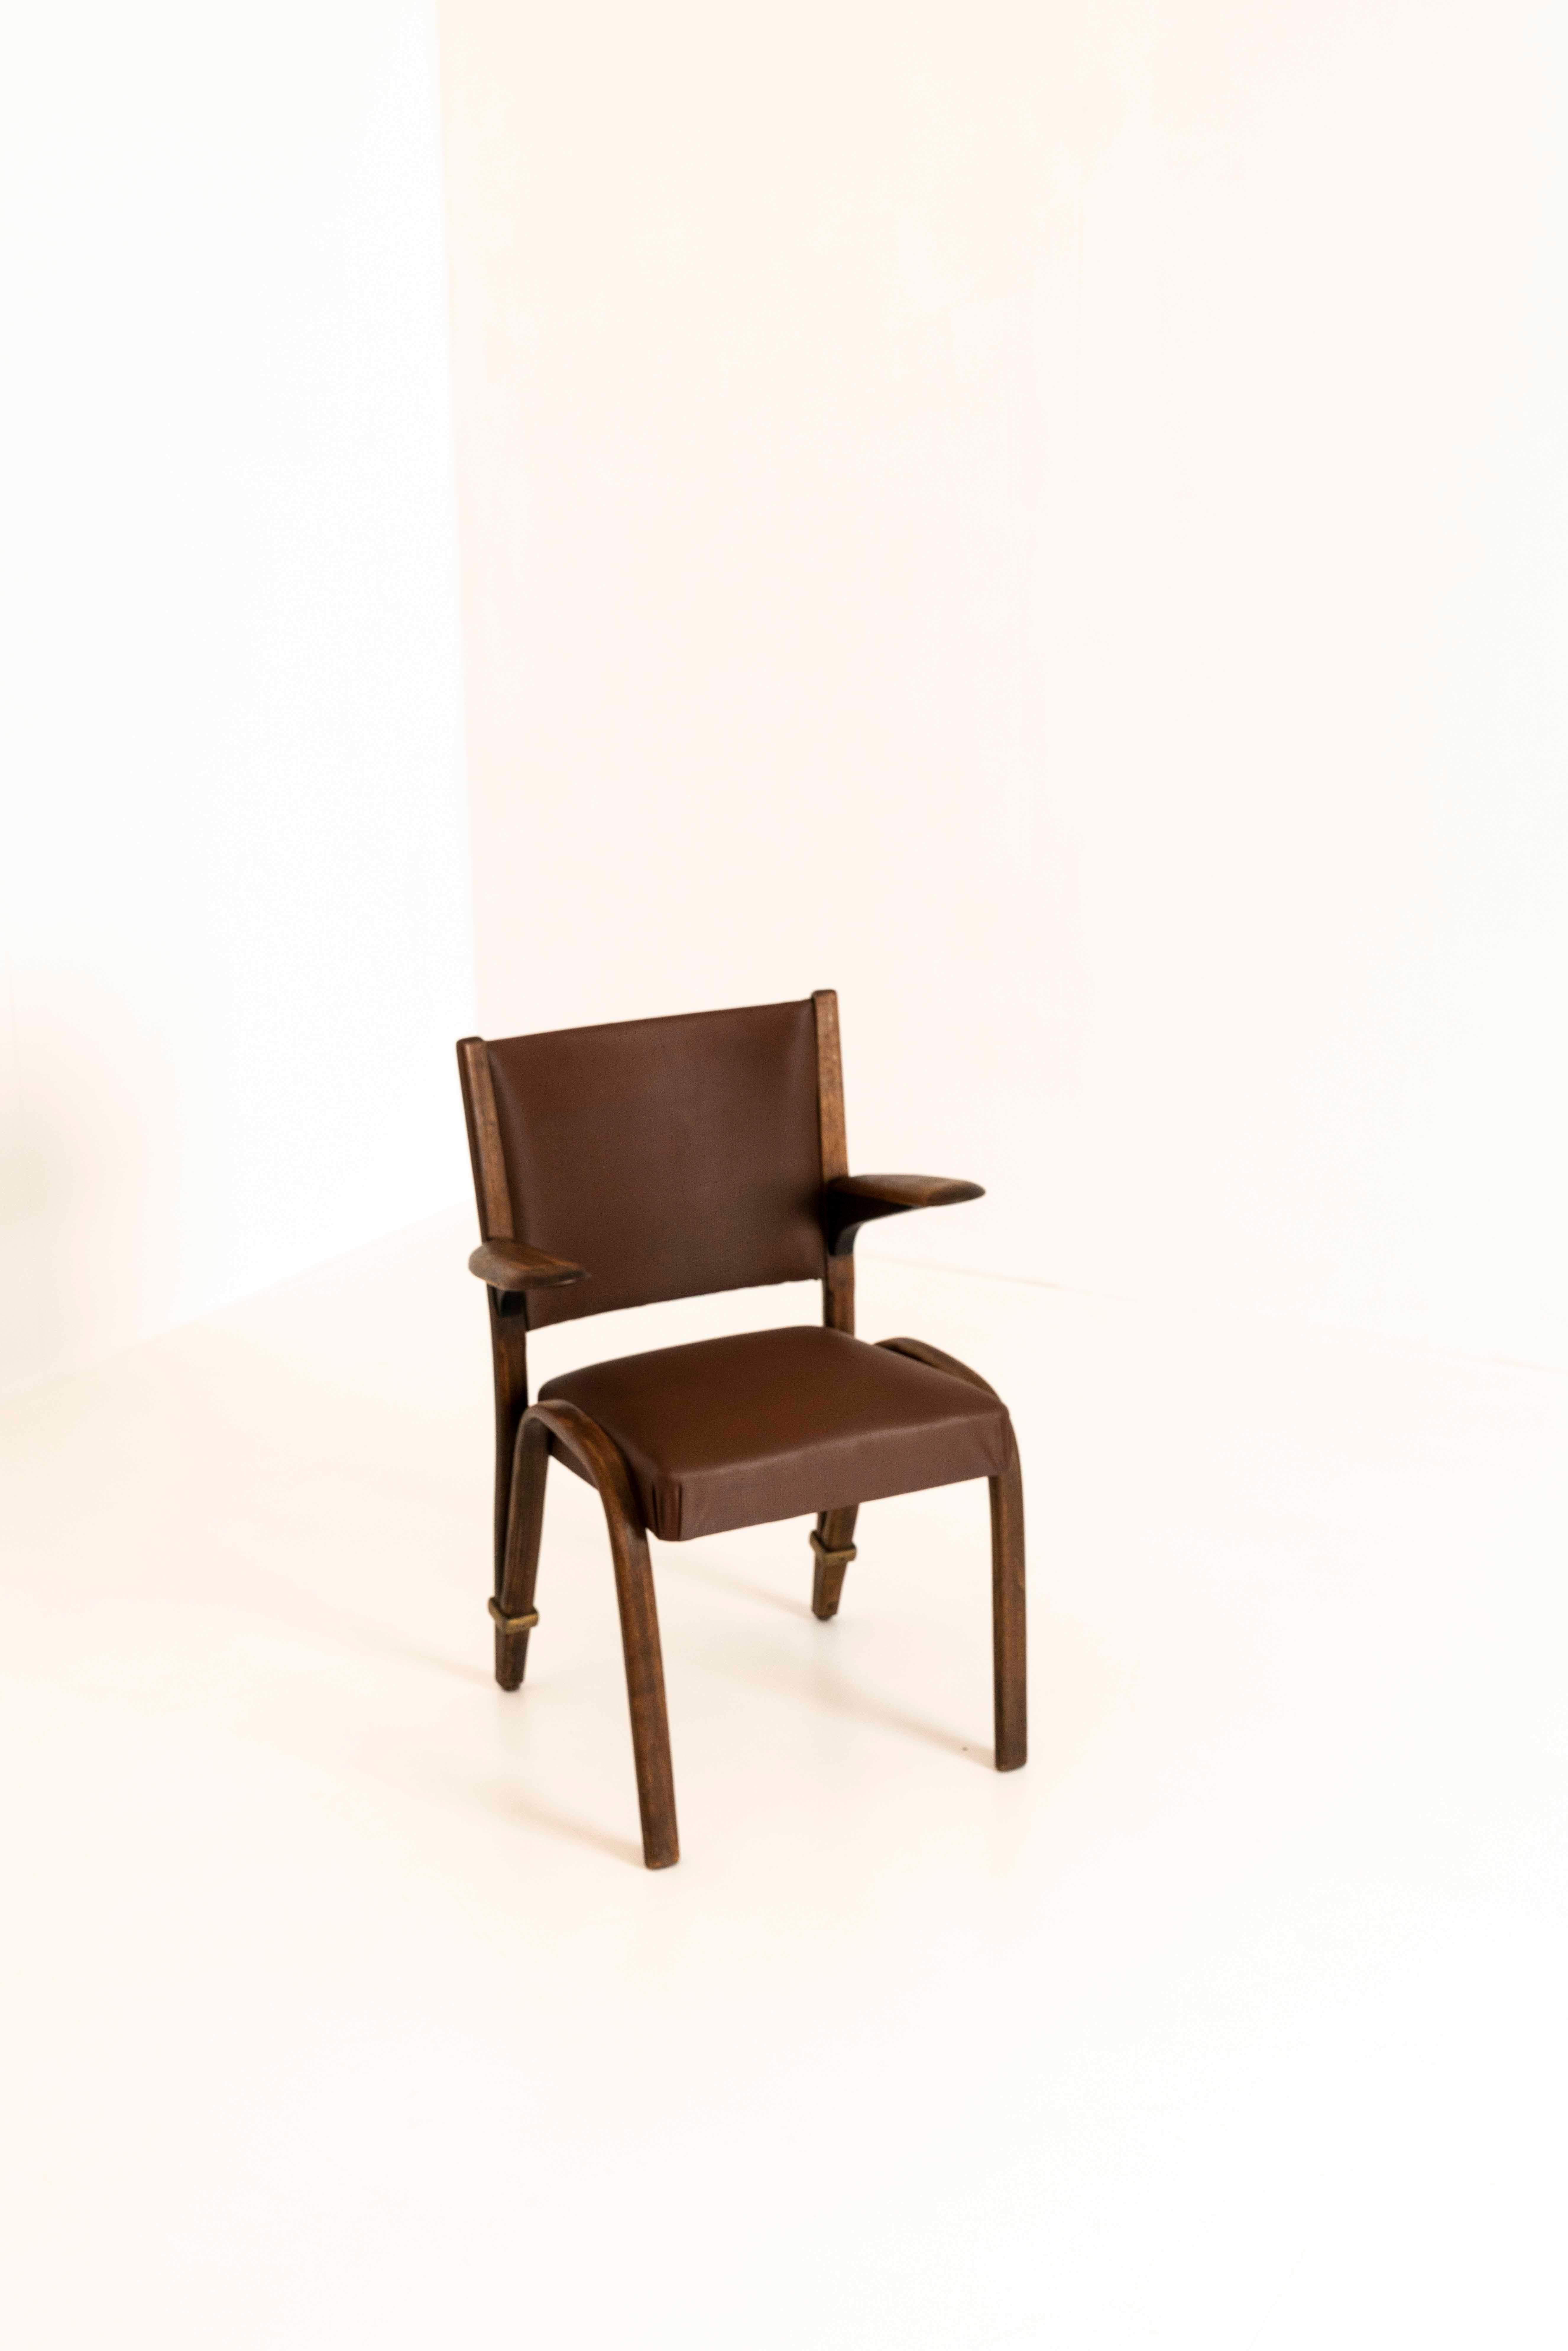 Ensemble de deux chaises françaises vintage de Hugues Steiner des années 1960. Ces chaises à dossier pivotant ont un design très exceptionnel qui est reconnaissable pour Hugues Steiner. Ils ont un couvercle marron foncé semblable à unskai et une